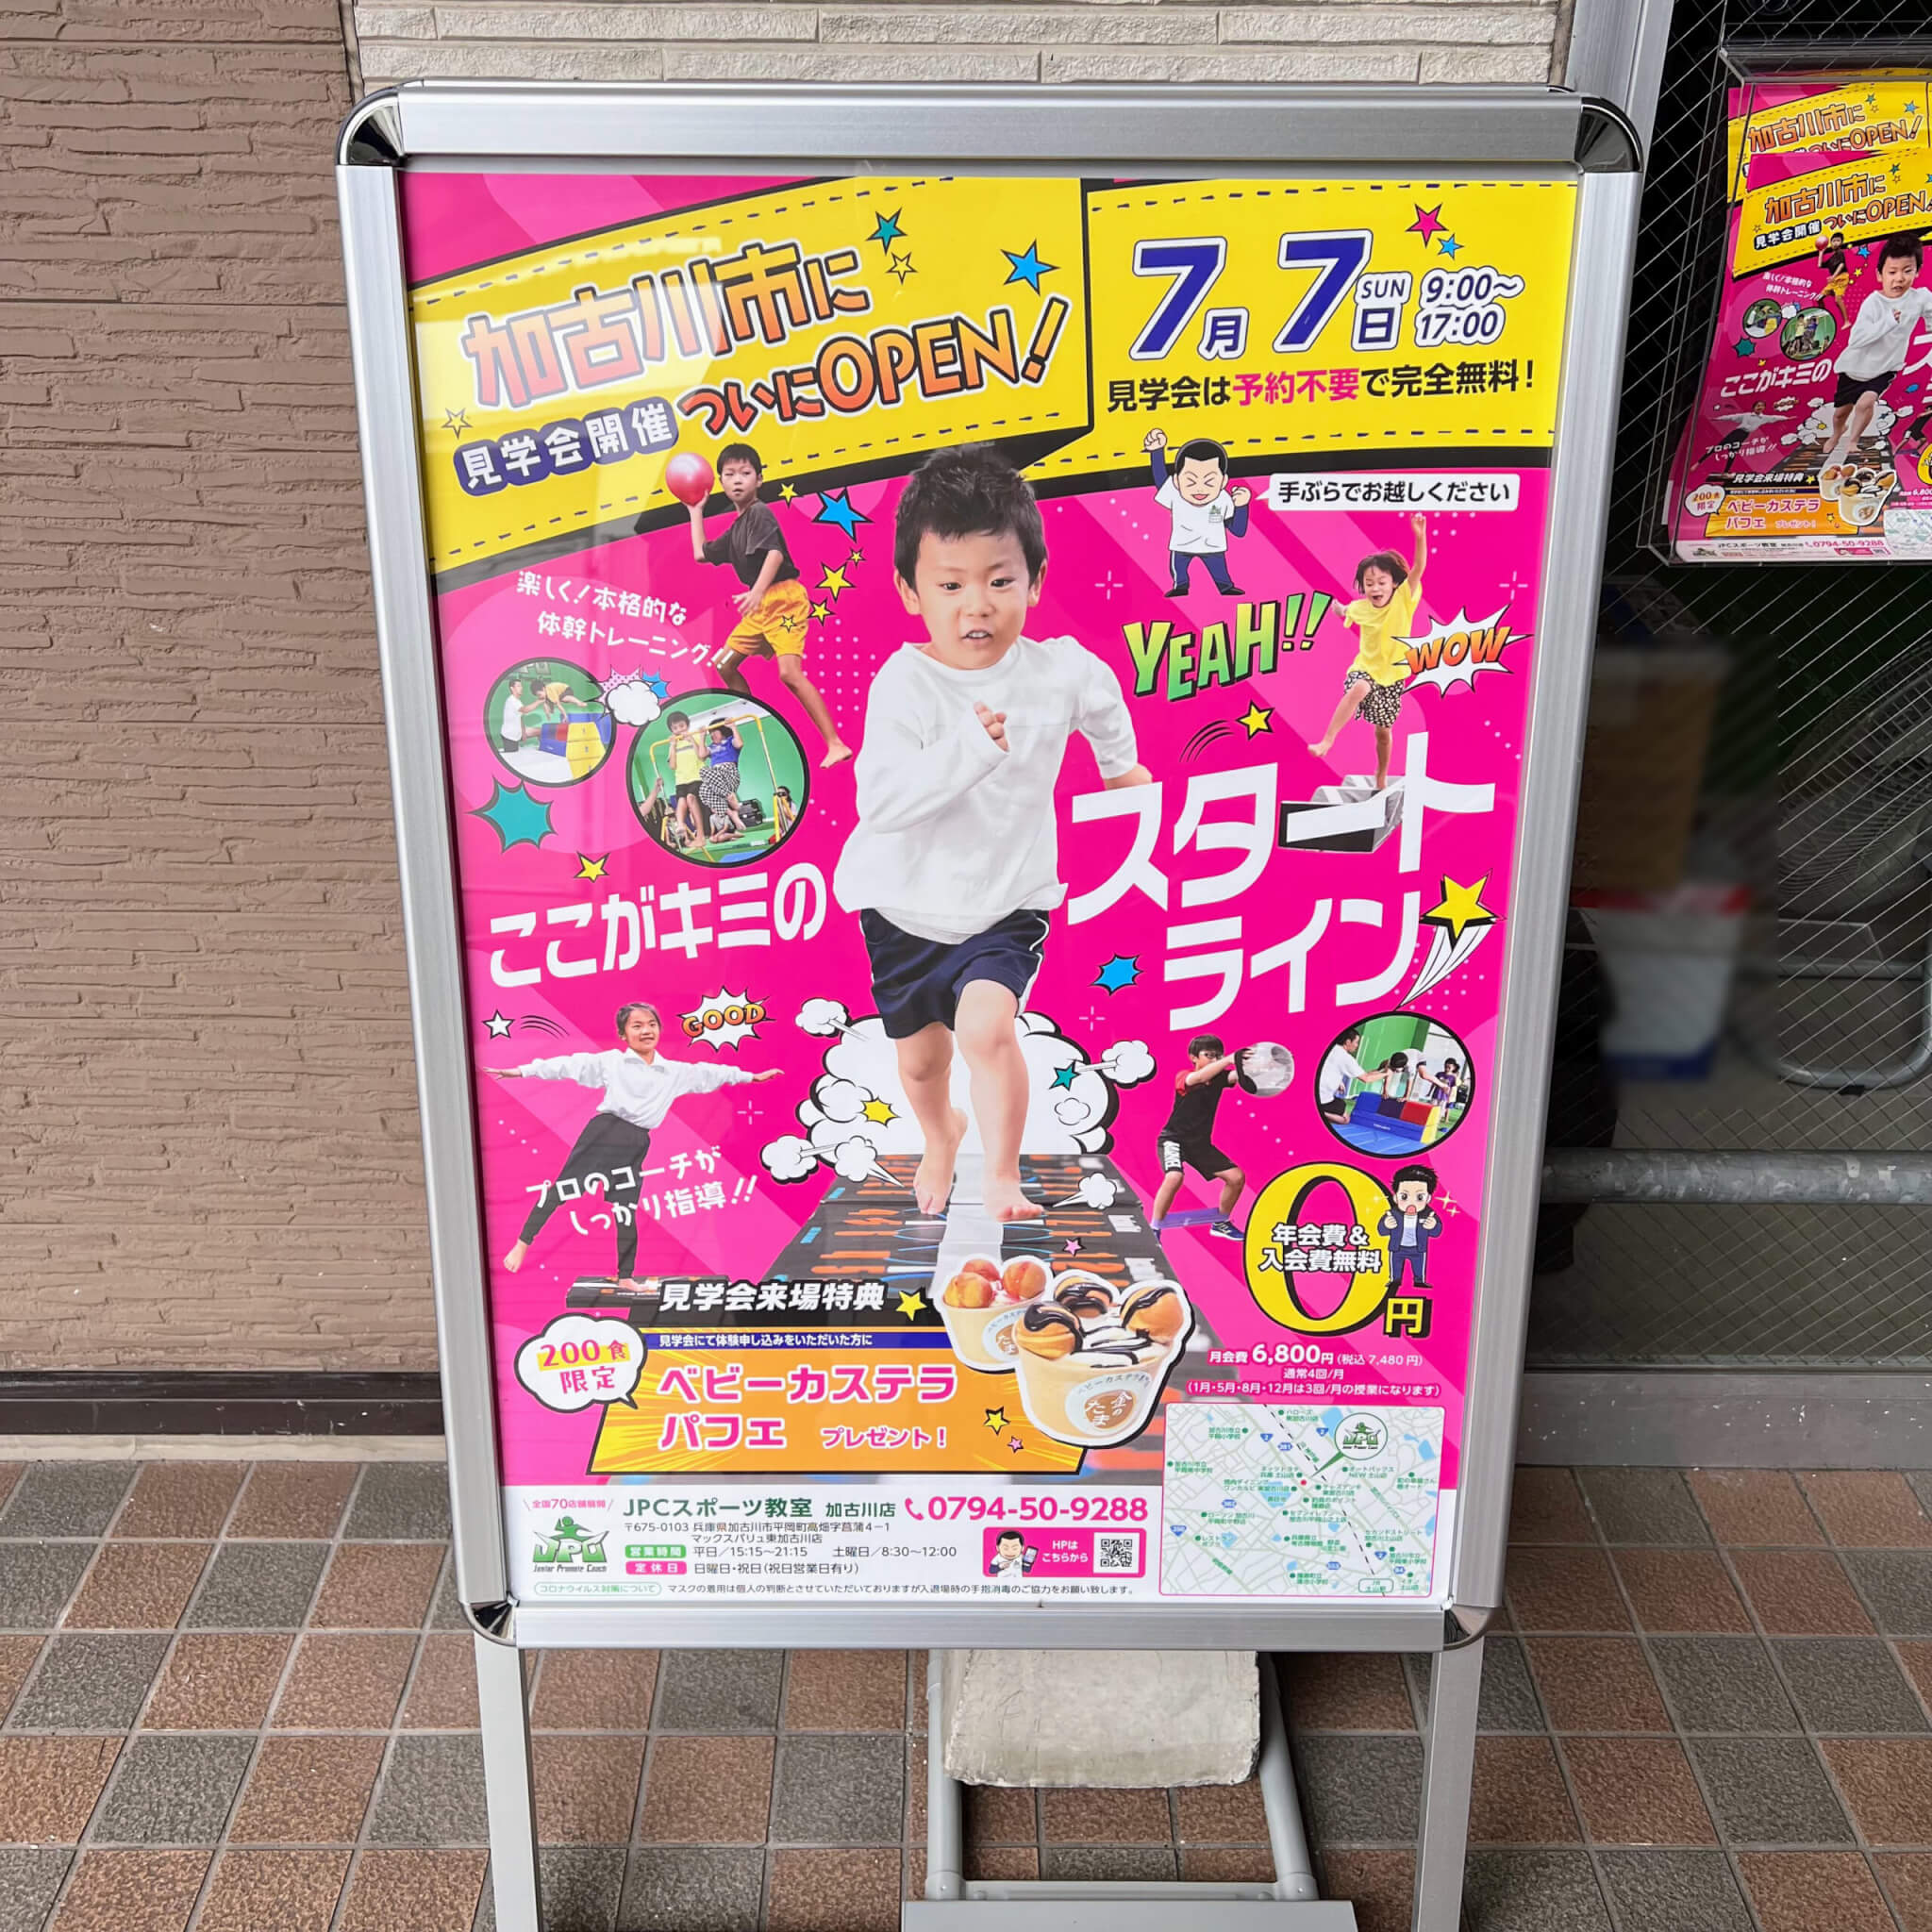 JPCスポーツ教室 加古川店のポスター